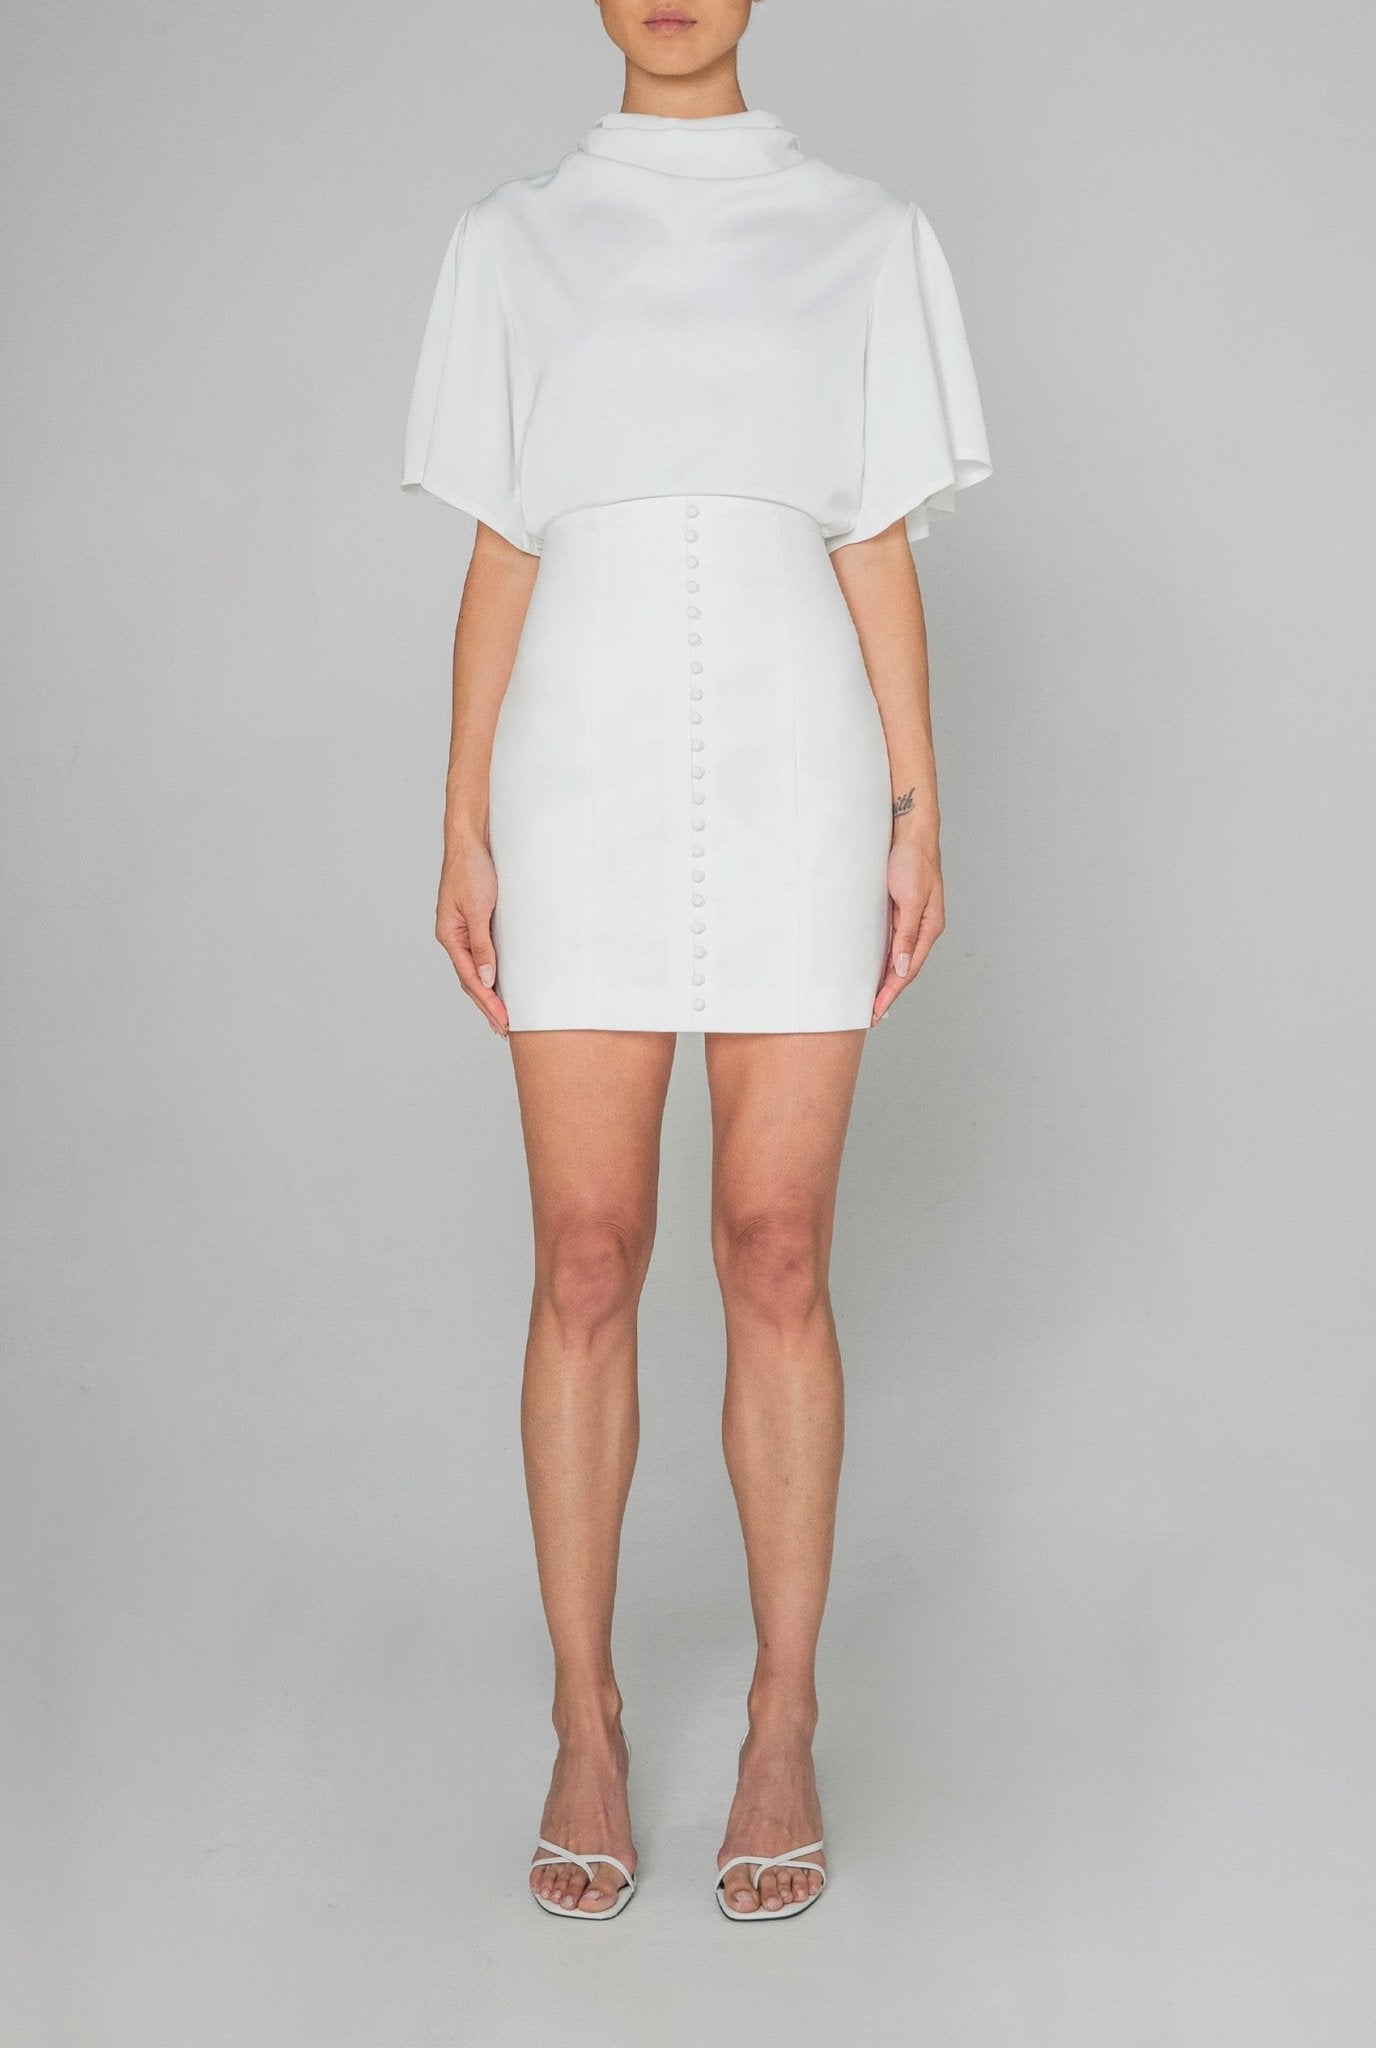 Joplin Skirt in White - BOSKEMPER